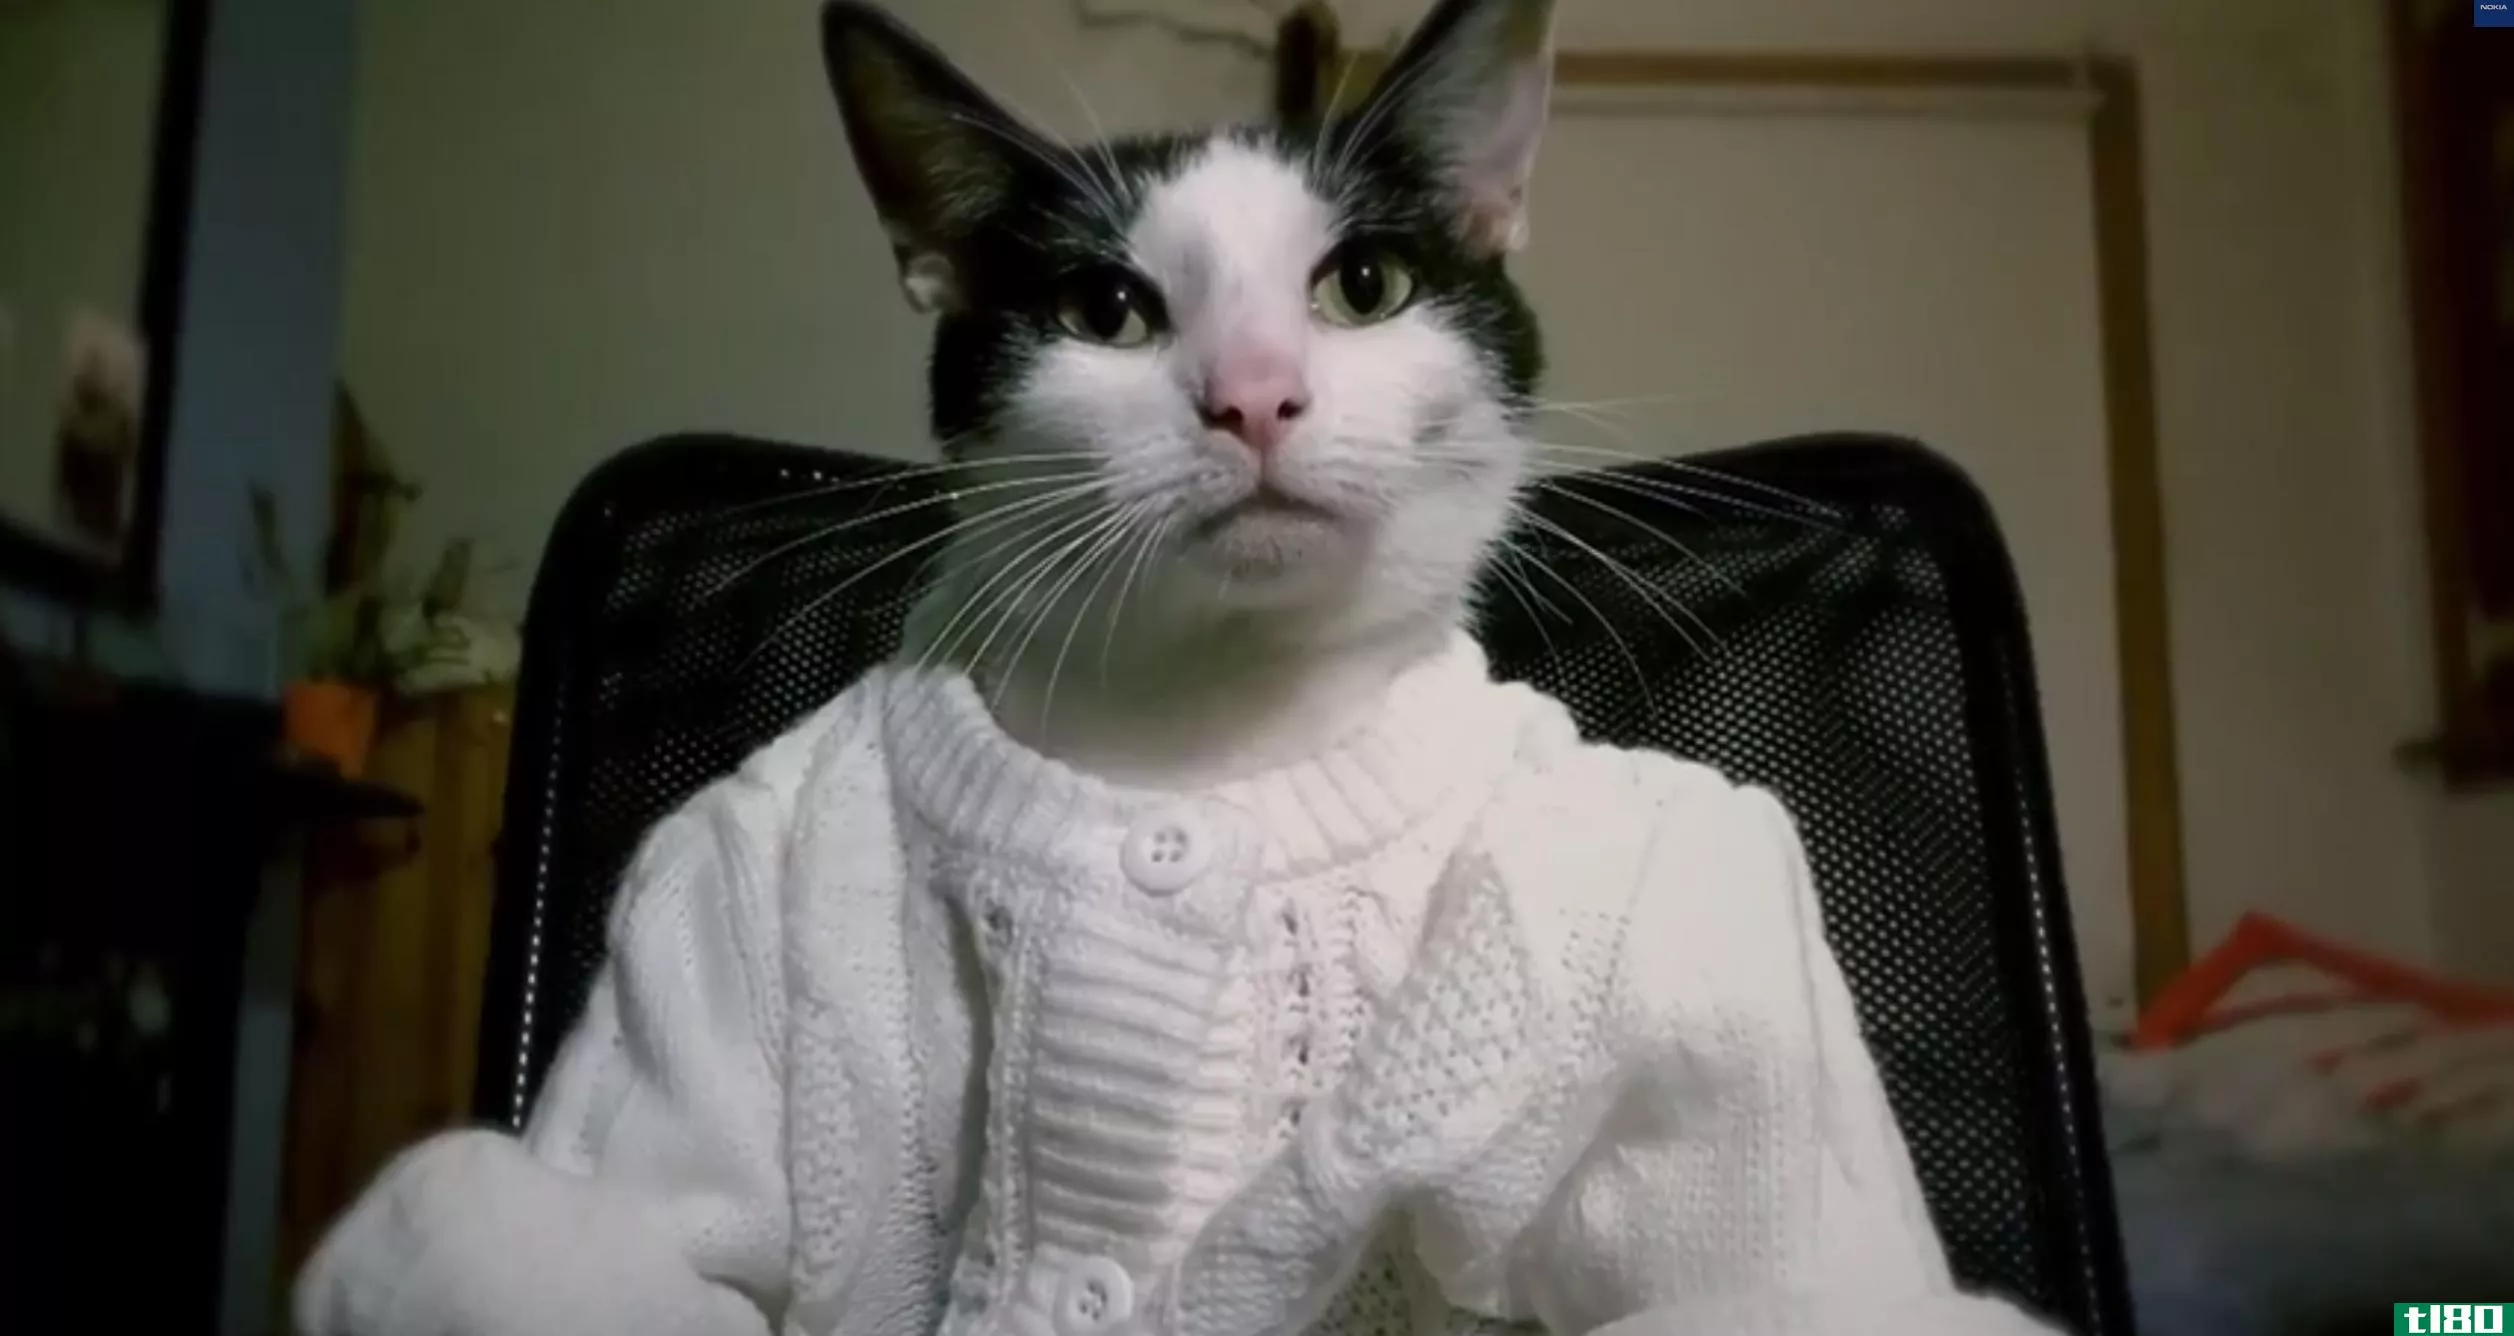 微软希望一个非常可爱的猫视频能说服你购买它的手机